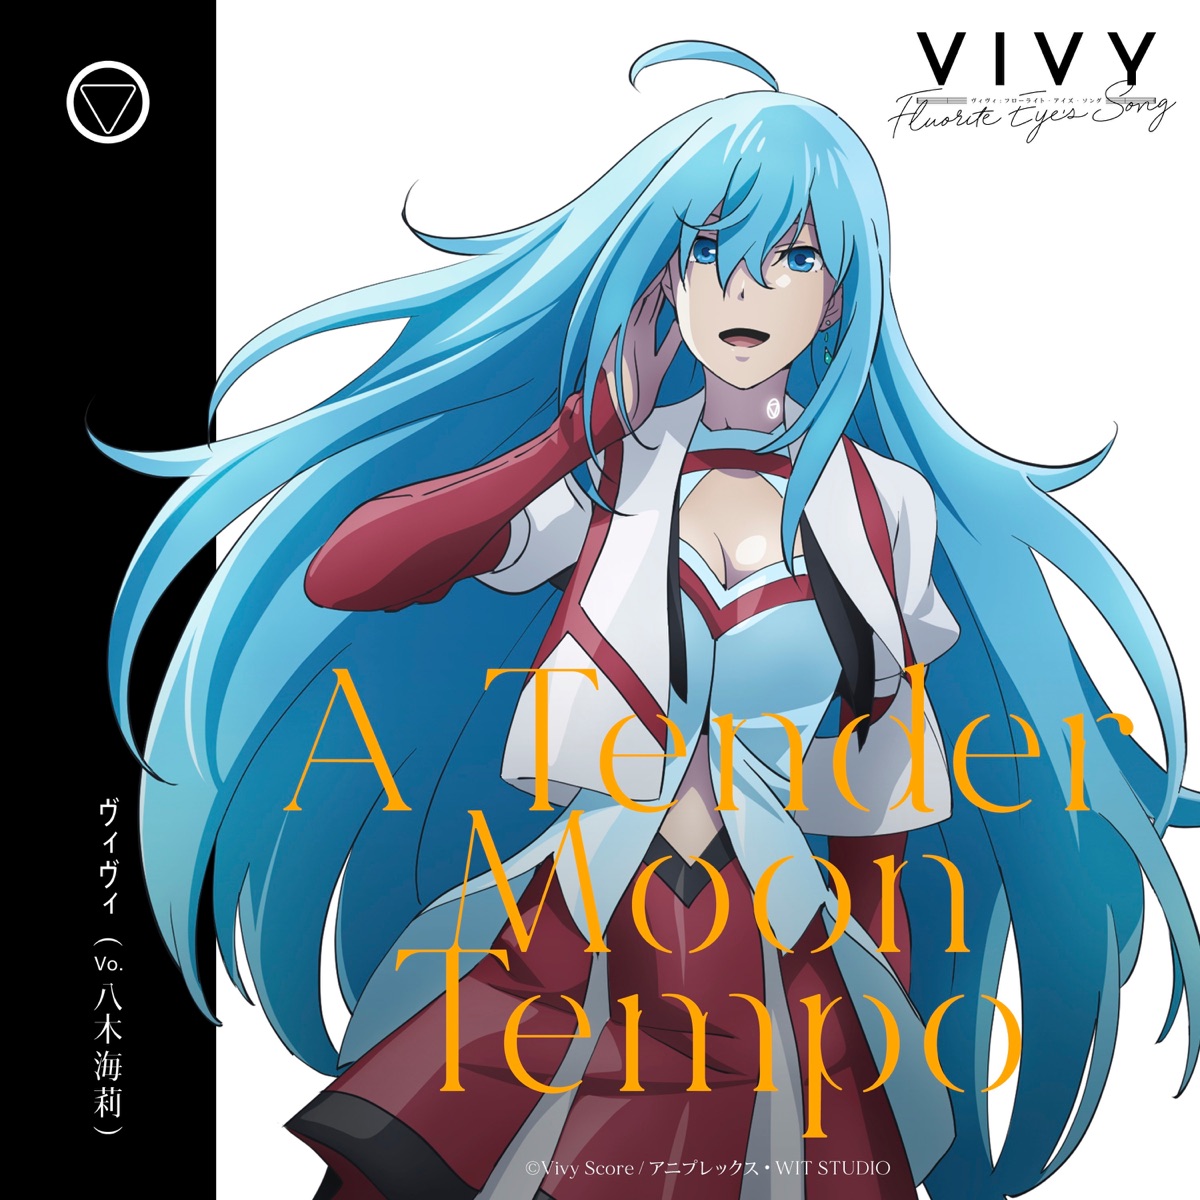 『ヴィヴィ(八木海莉) - A Tender Moon Tempo 歌詞』収録の『A Tender Moon Tempo』ジャケット